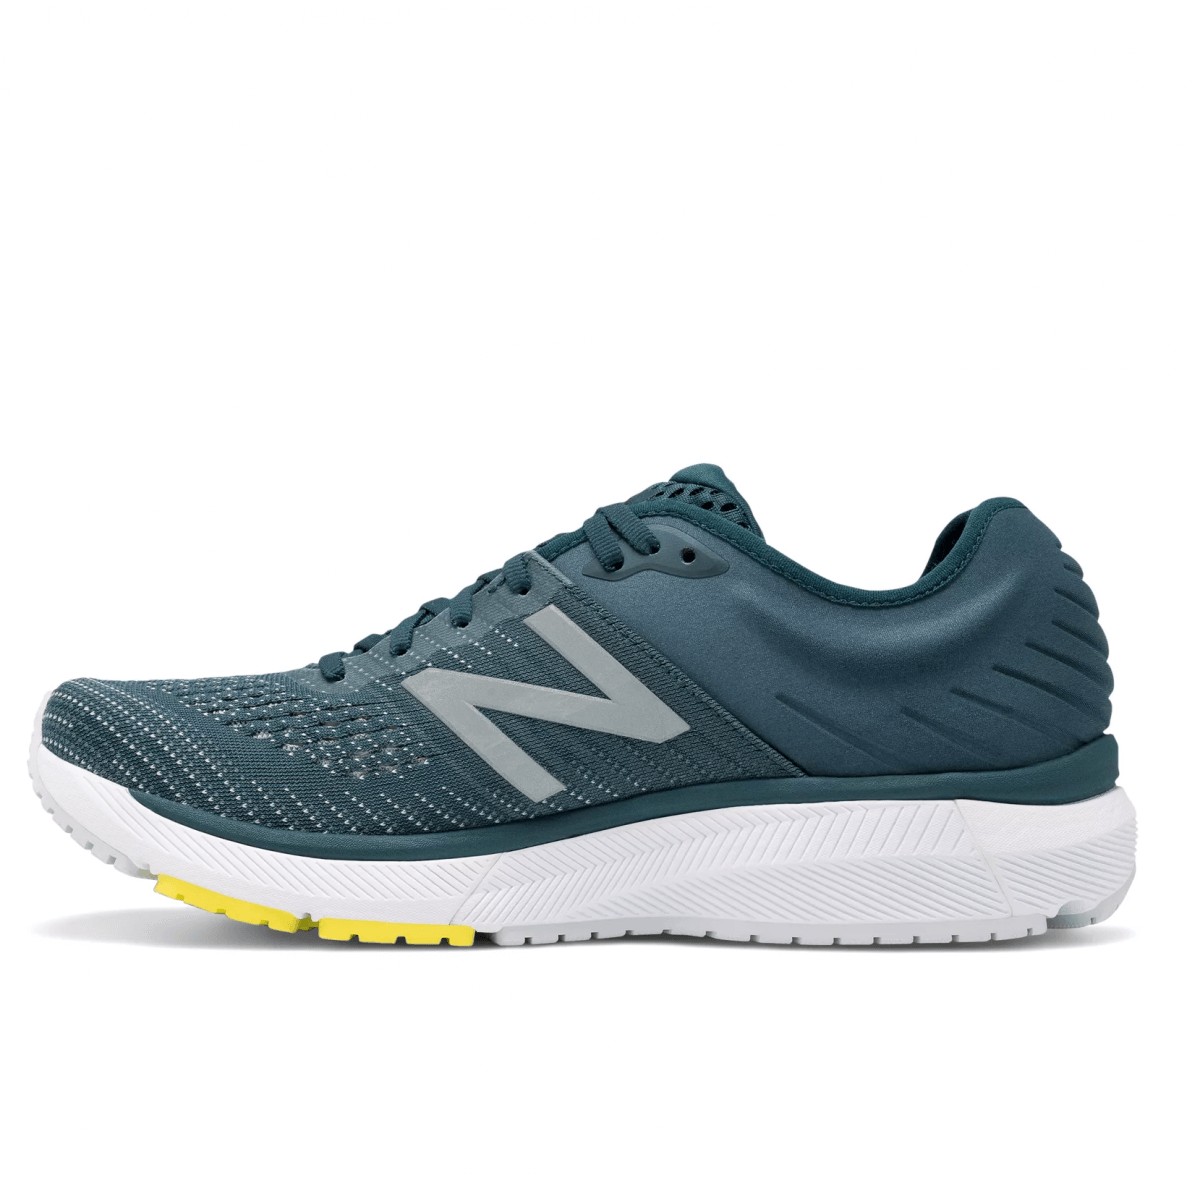 New Balance 860 v10 Men's Running Shoes Blue